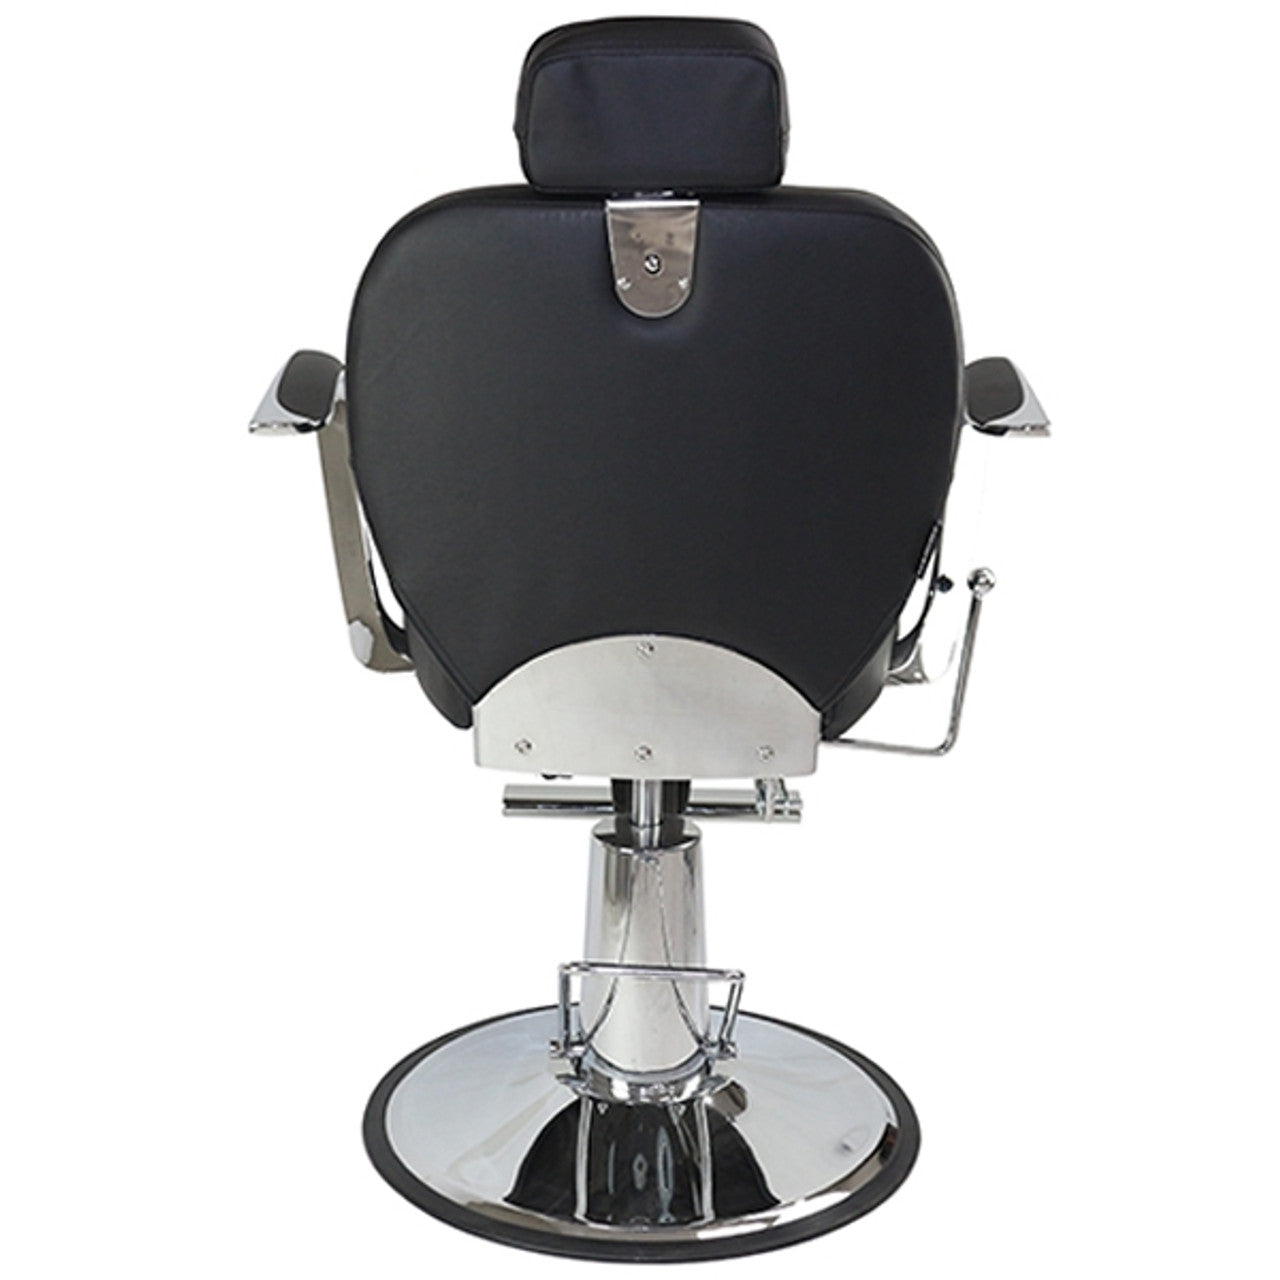 Joiken Titan Recliner Chair - Black